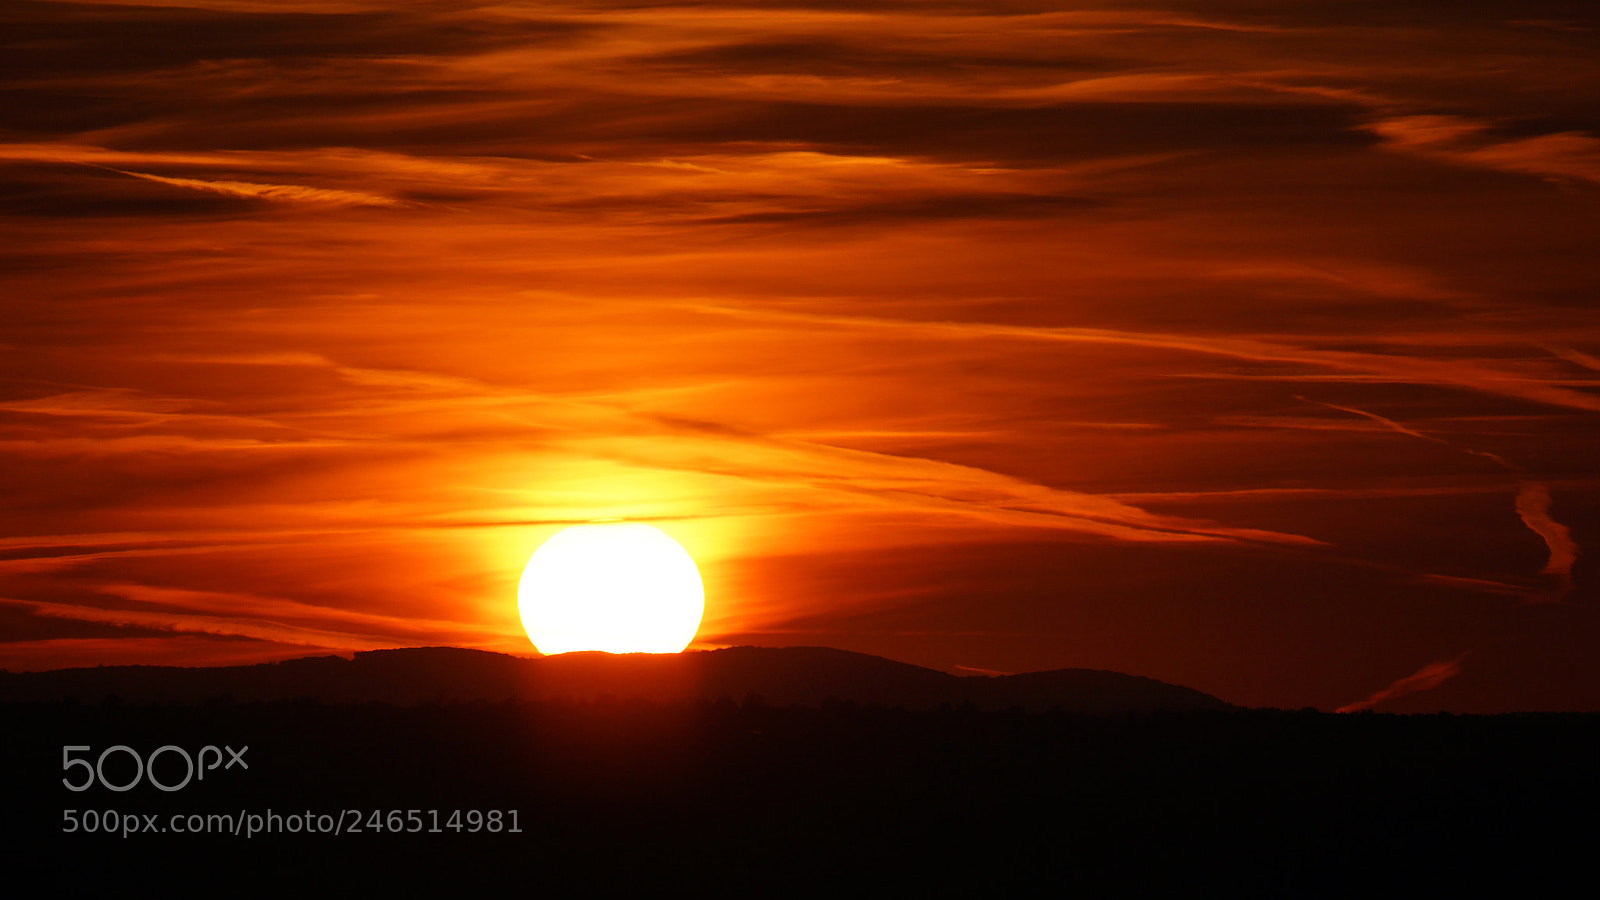 Sony SLT-A77 sample photo. Kahlenberg sunset photography